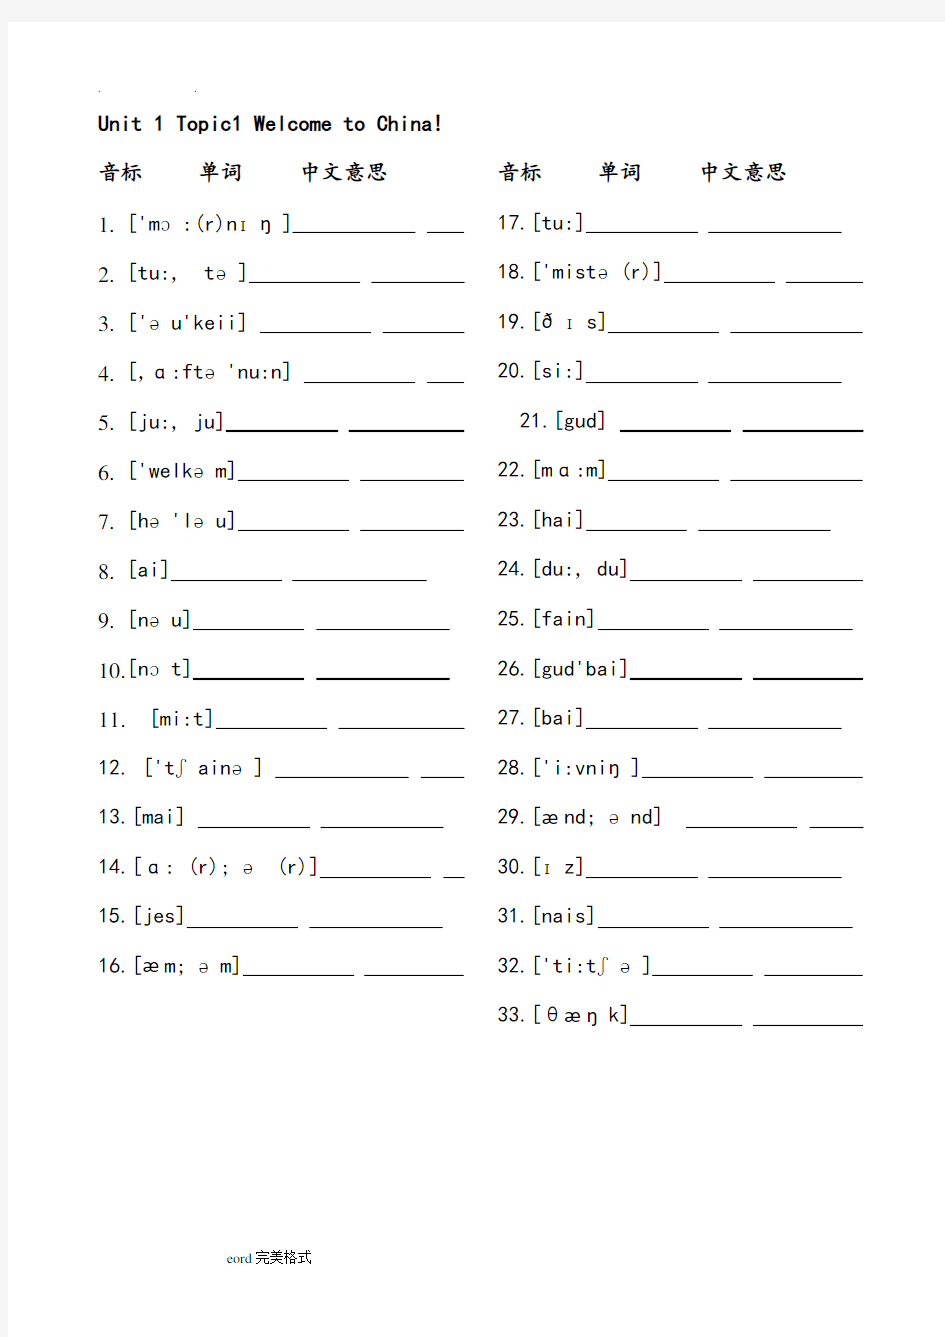 仁爱英语七年级初一年级(上册)看音标写单词表